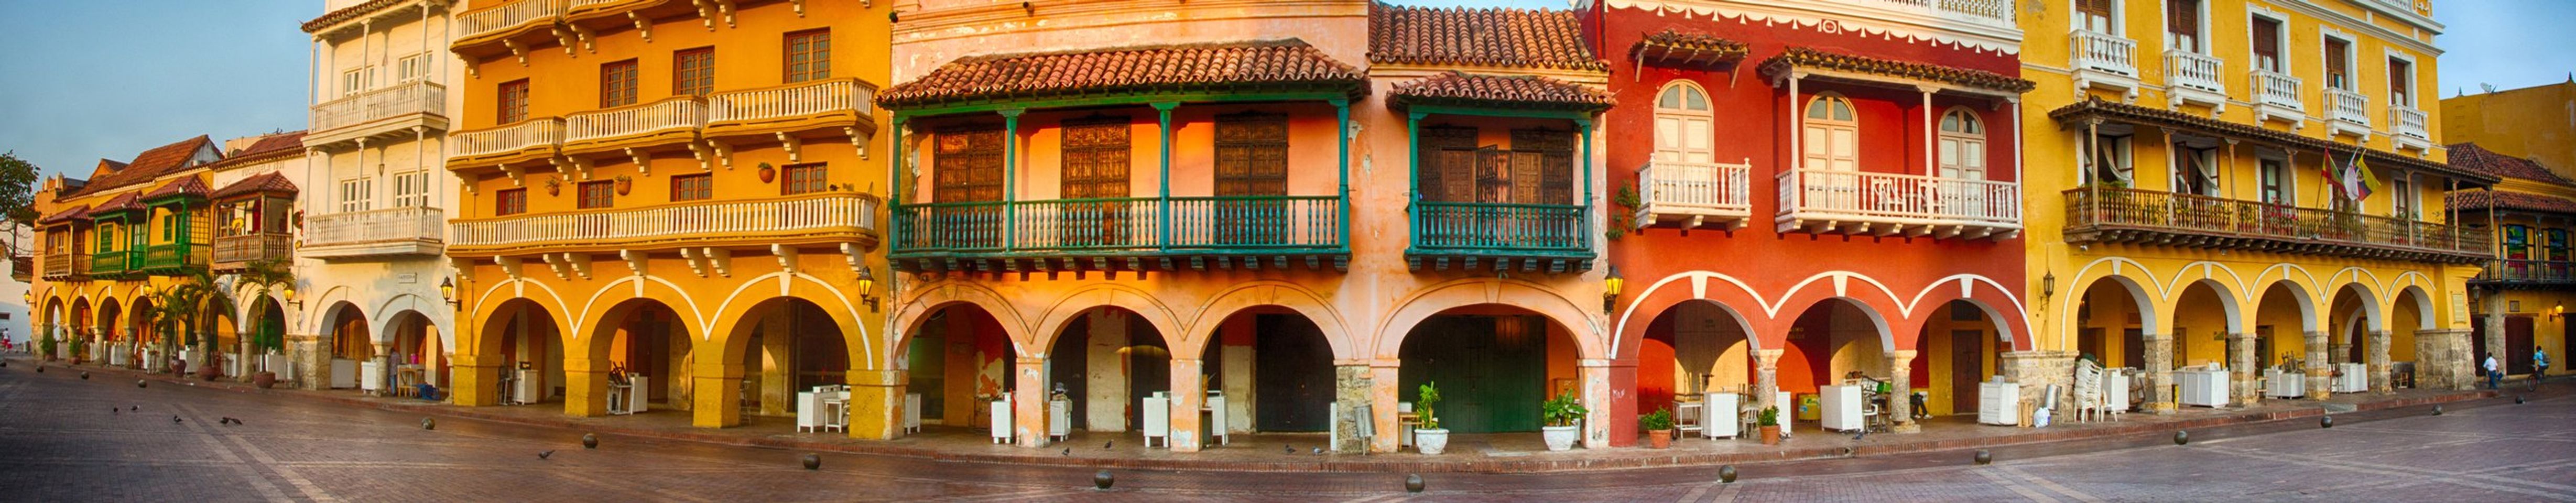 Ontdek de verborgen pareltjes van Cartagena voor uw reis.